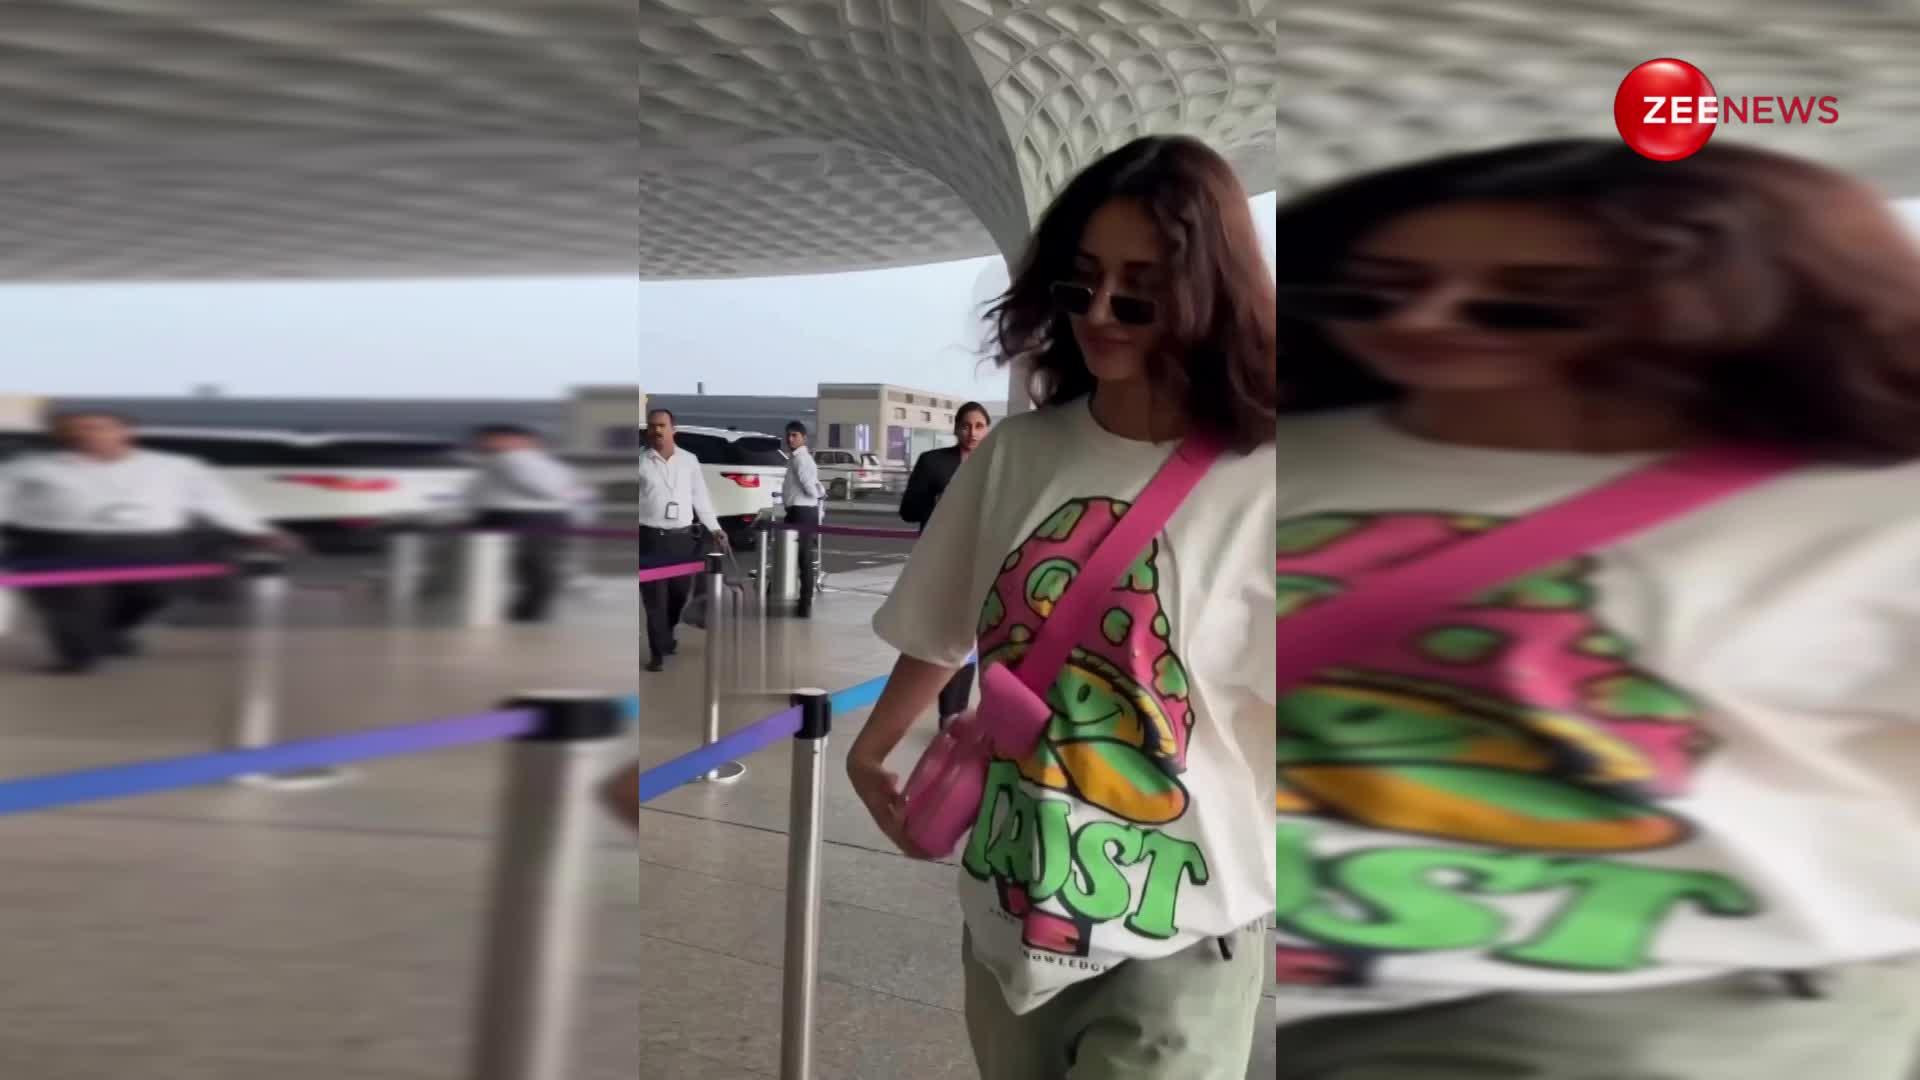 ढीली टी शर्ट के साथ छोटा सा निक्कर पहन Disha Patani एयरपोर्ट पर इस हाल में हुईं स्पॉट, देख लोगों ने किया ट्रोल